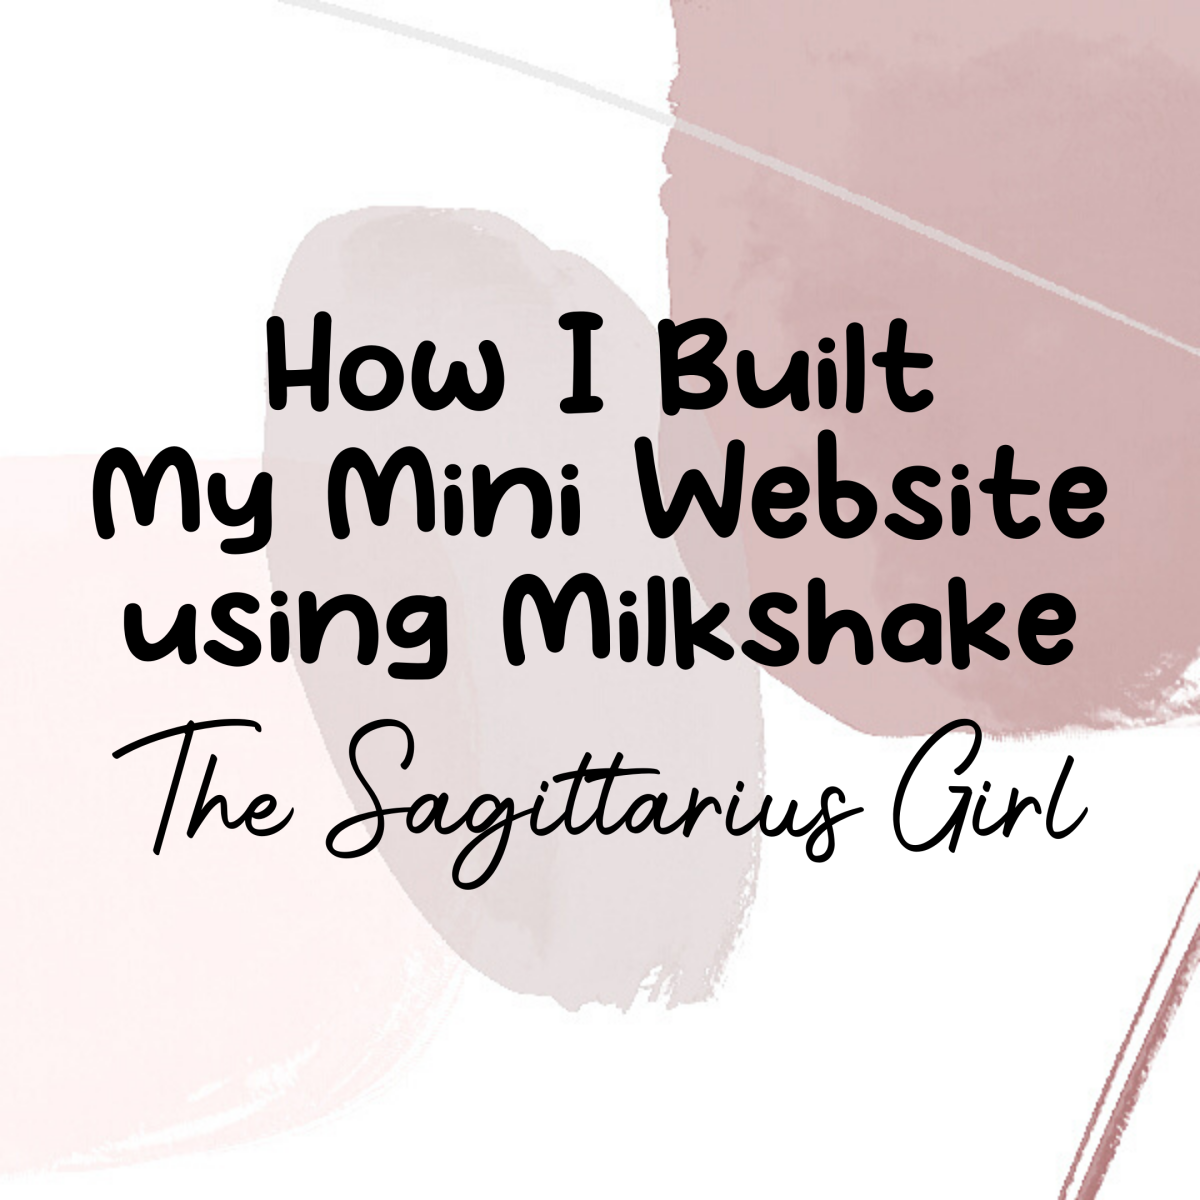 How I Built My Mini Website Using Milkshake